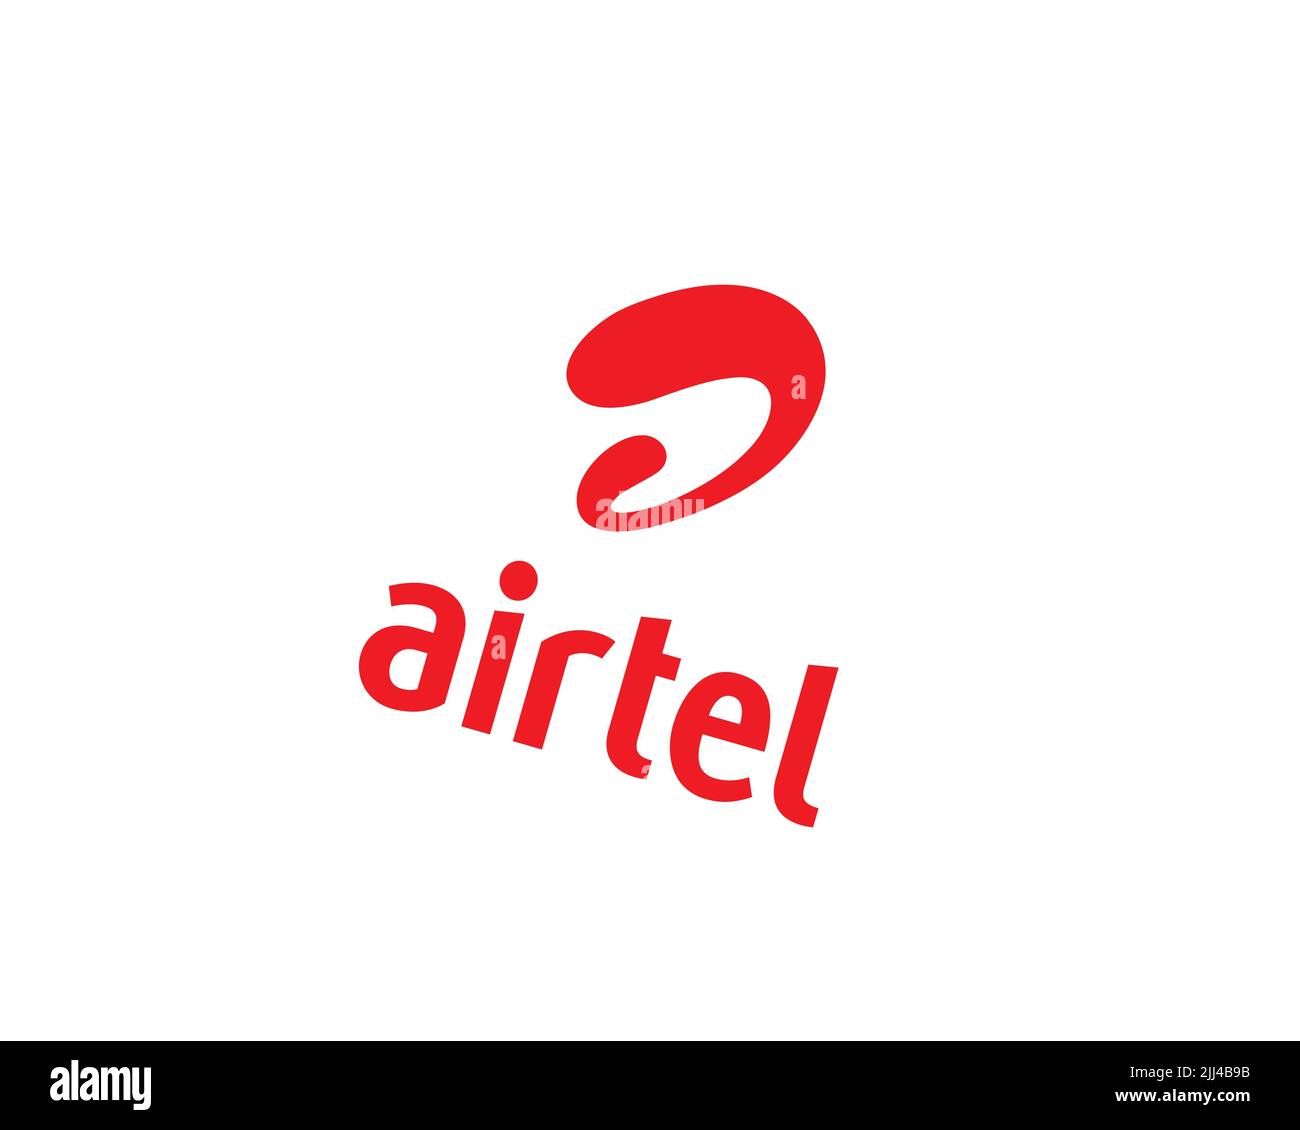 Bharti Airtel, rotated logo, white background B Stock Photo